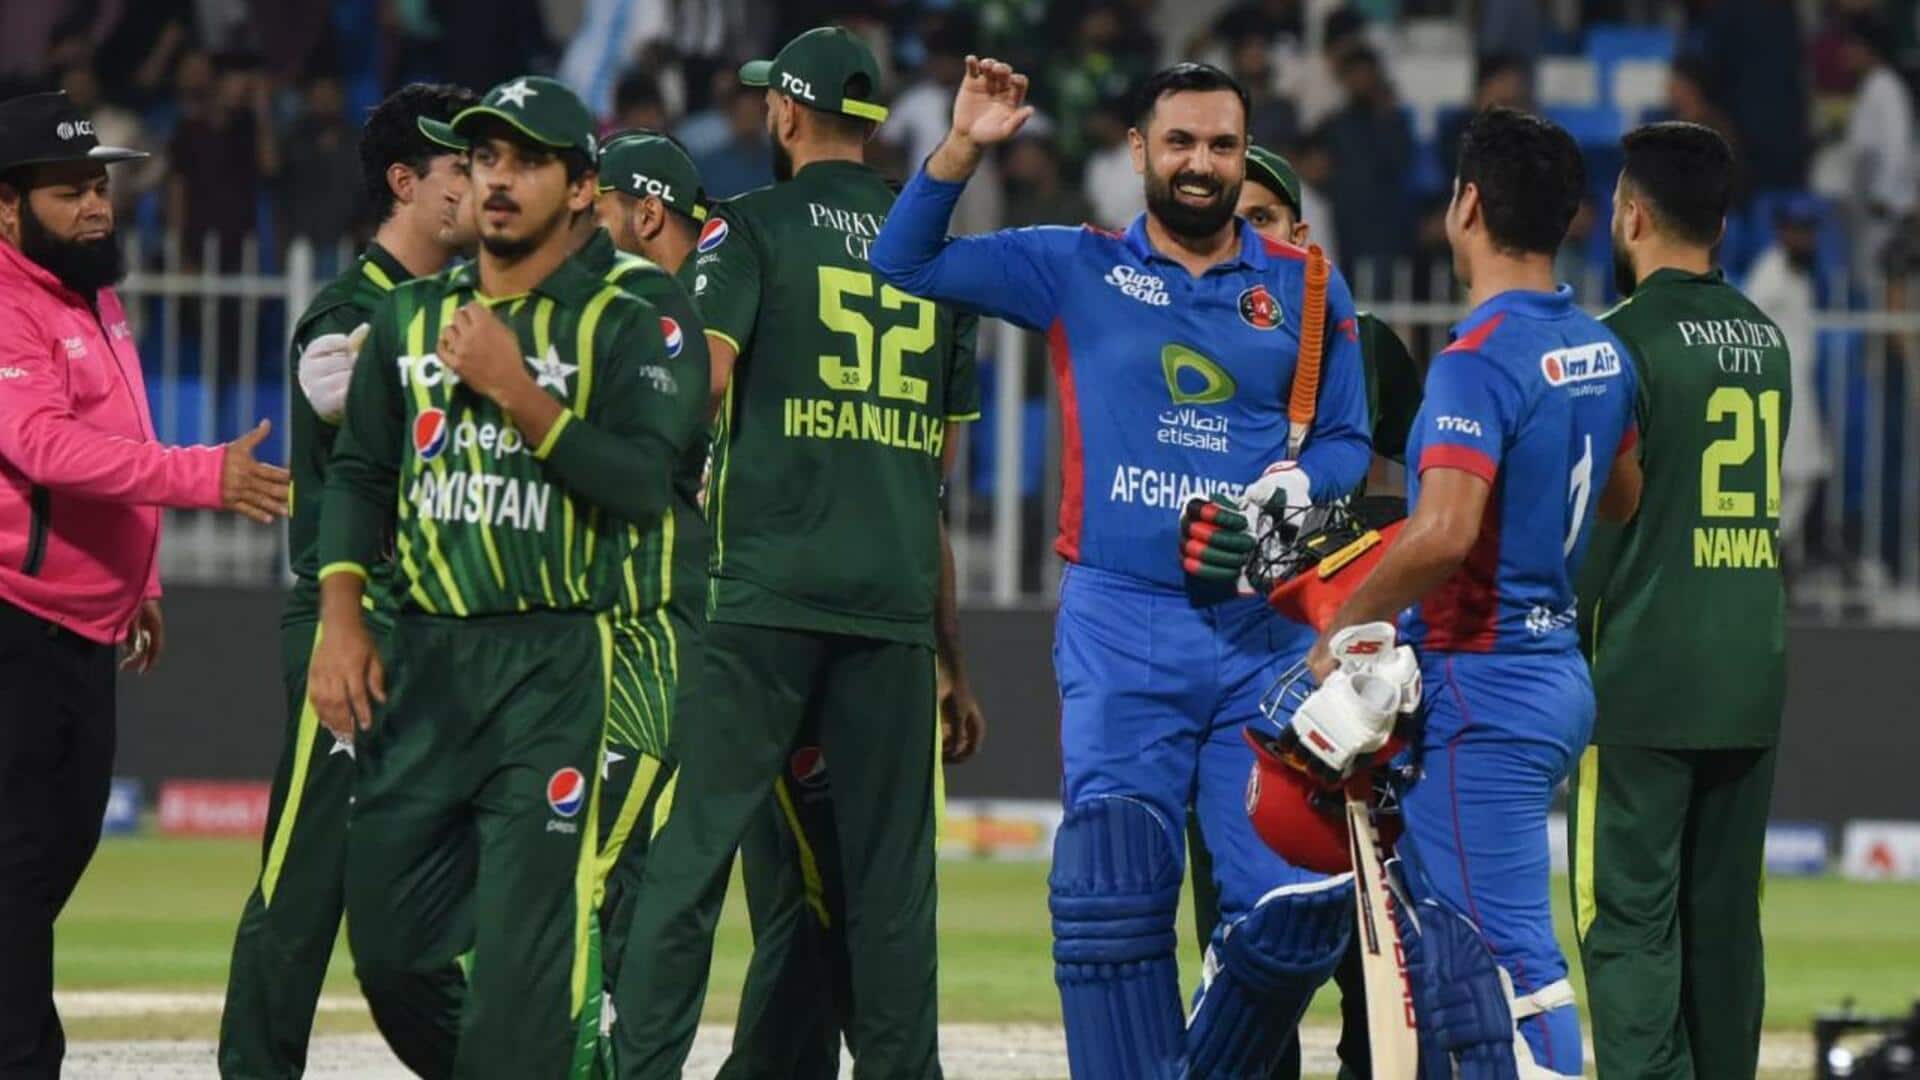 अफगानिस्तान ने रचा इतिहास, पाकिस्तान के खिलाफ पहली बार कोई अंतरराष्ट्रीय सीरीज जीती 